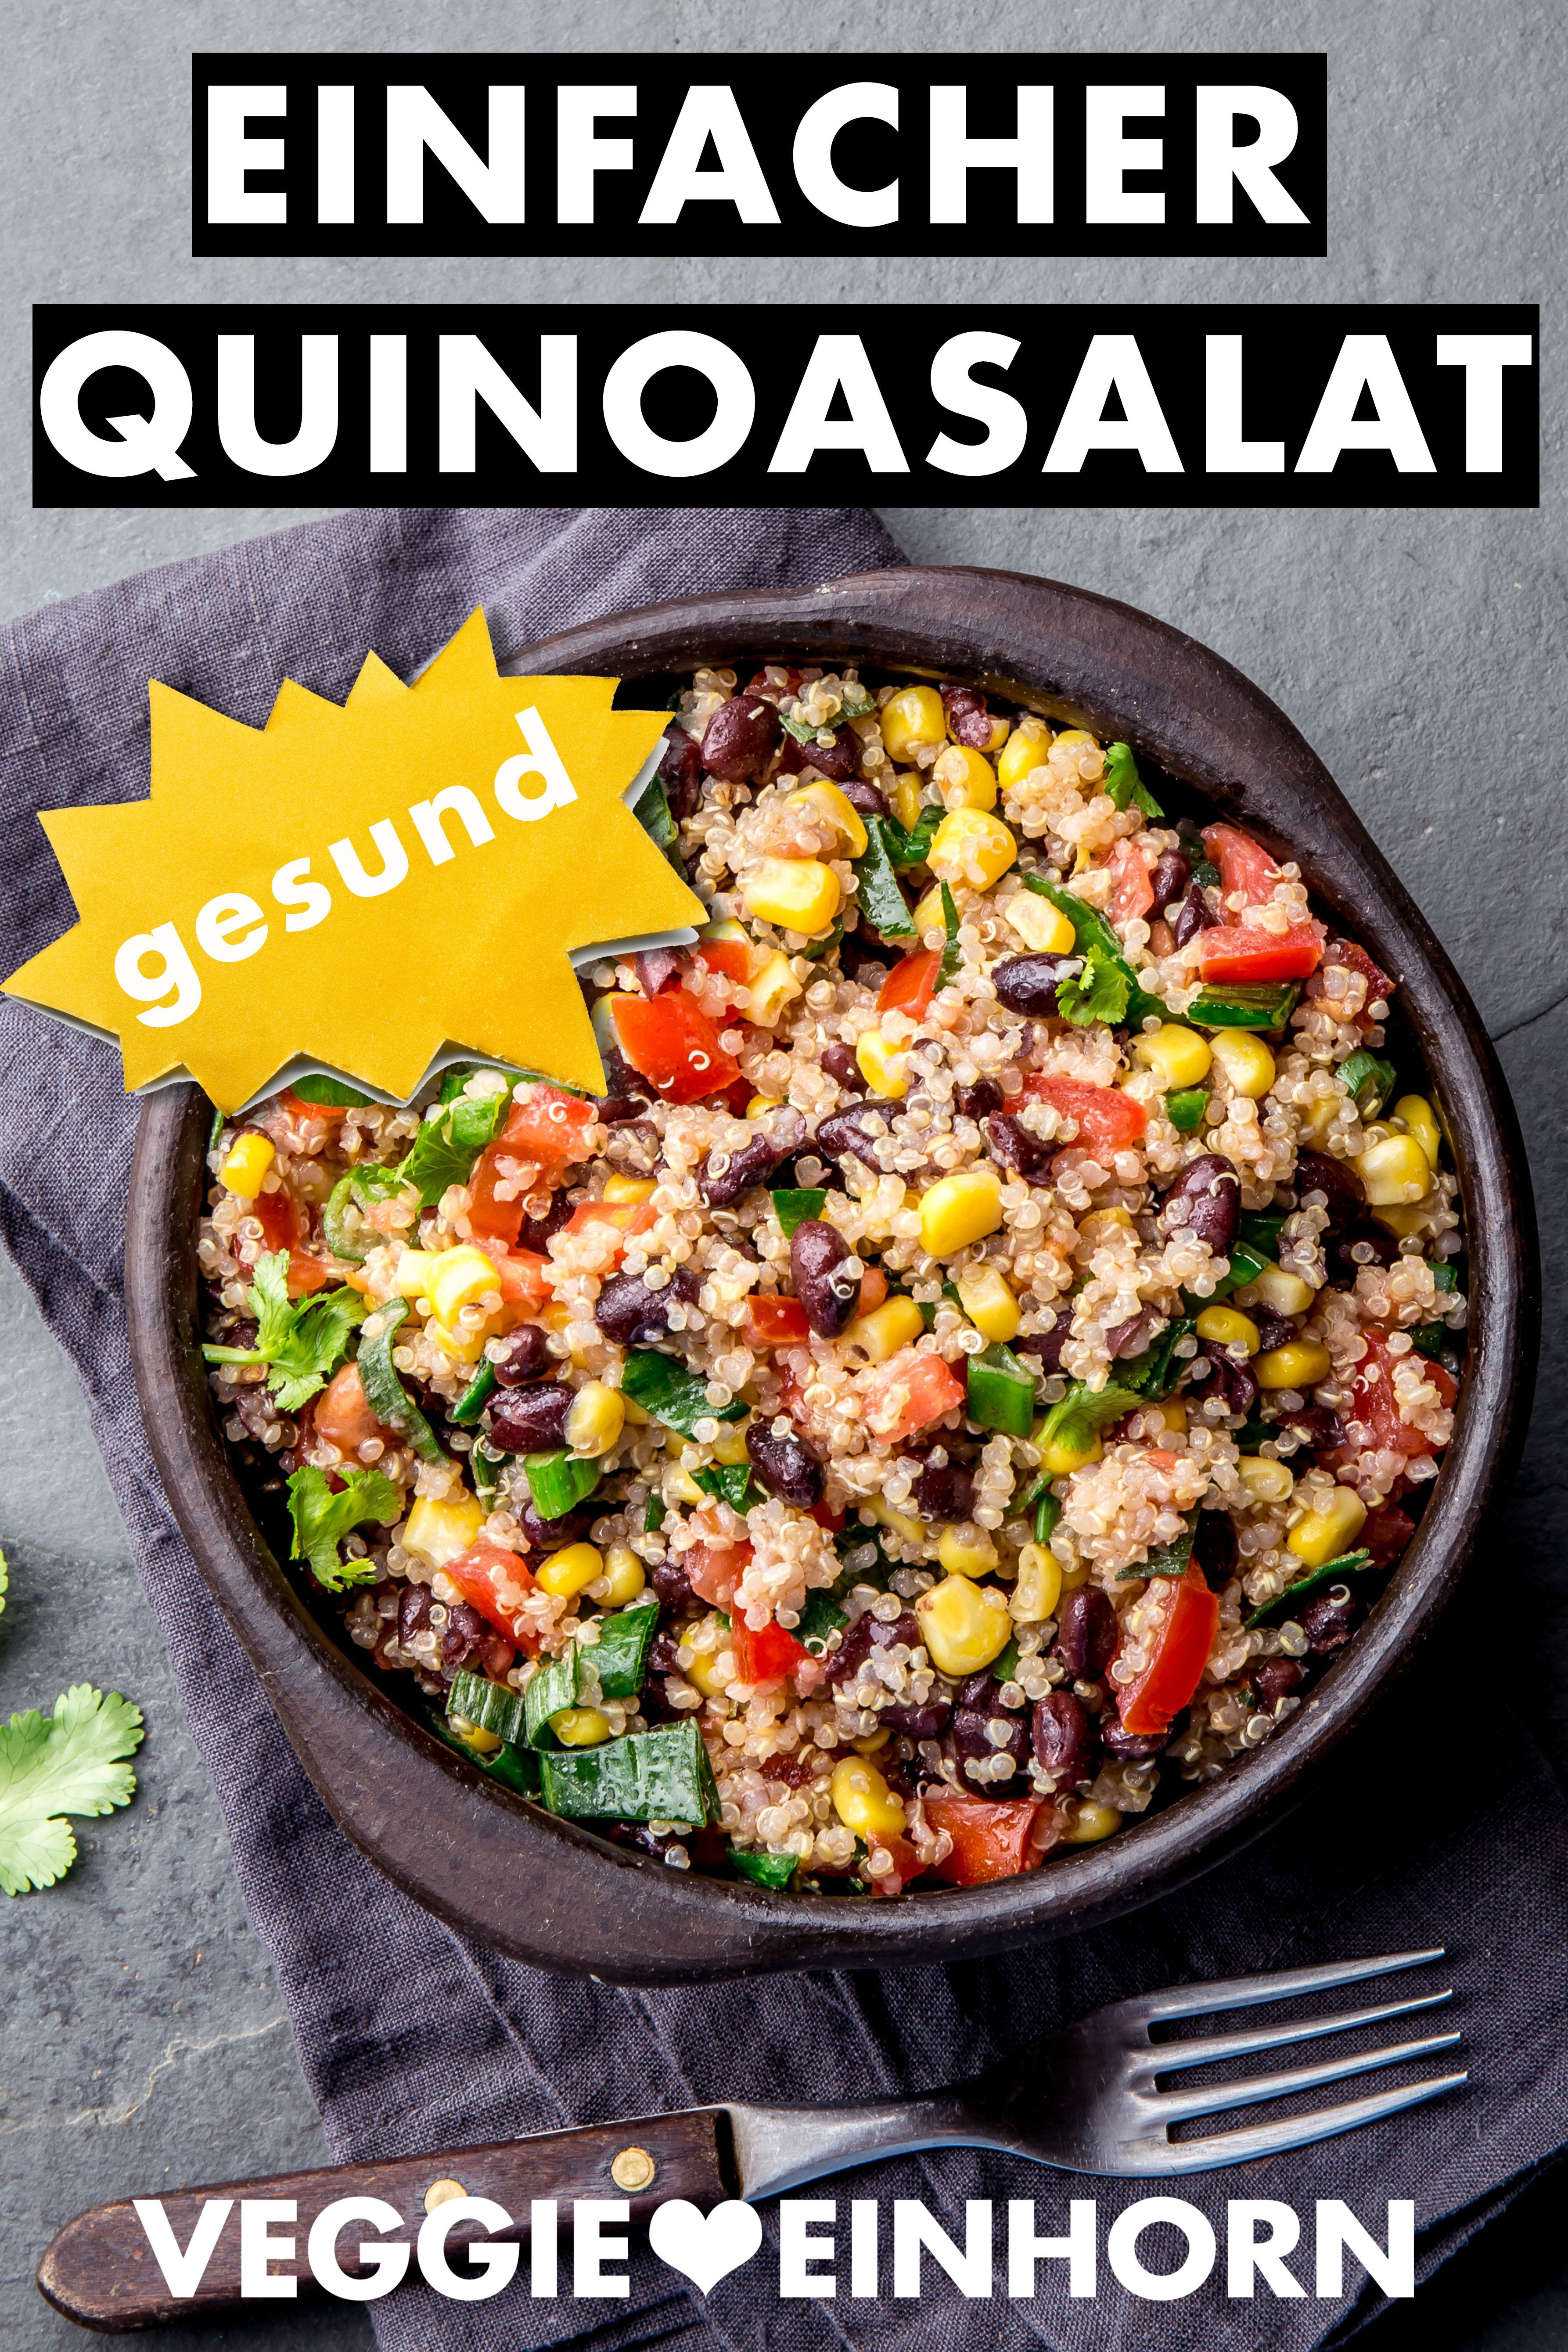 Einfacher mexikanischer Quinoa Salat | Bunter vegetarischer Quinoasalat | Gesund und lecker - Einfacher mexikanischer Quinoa Salat | Bunter vegetarischer Quinoasalat | Gesund und lecker -   15 fitness Rezepte salat ideas